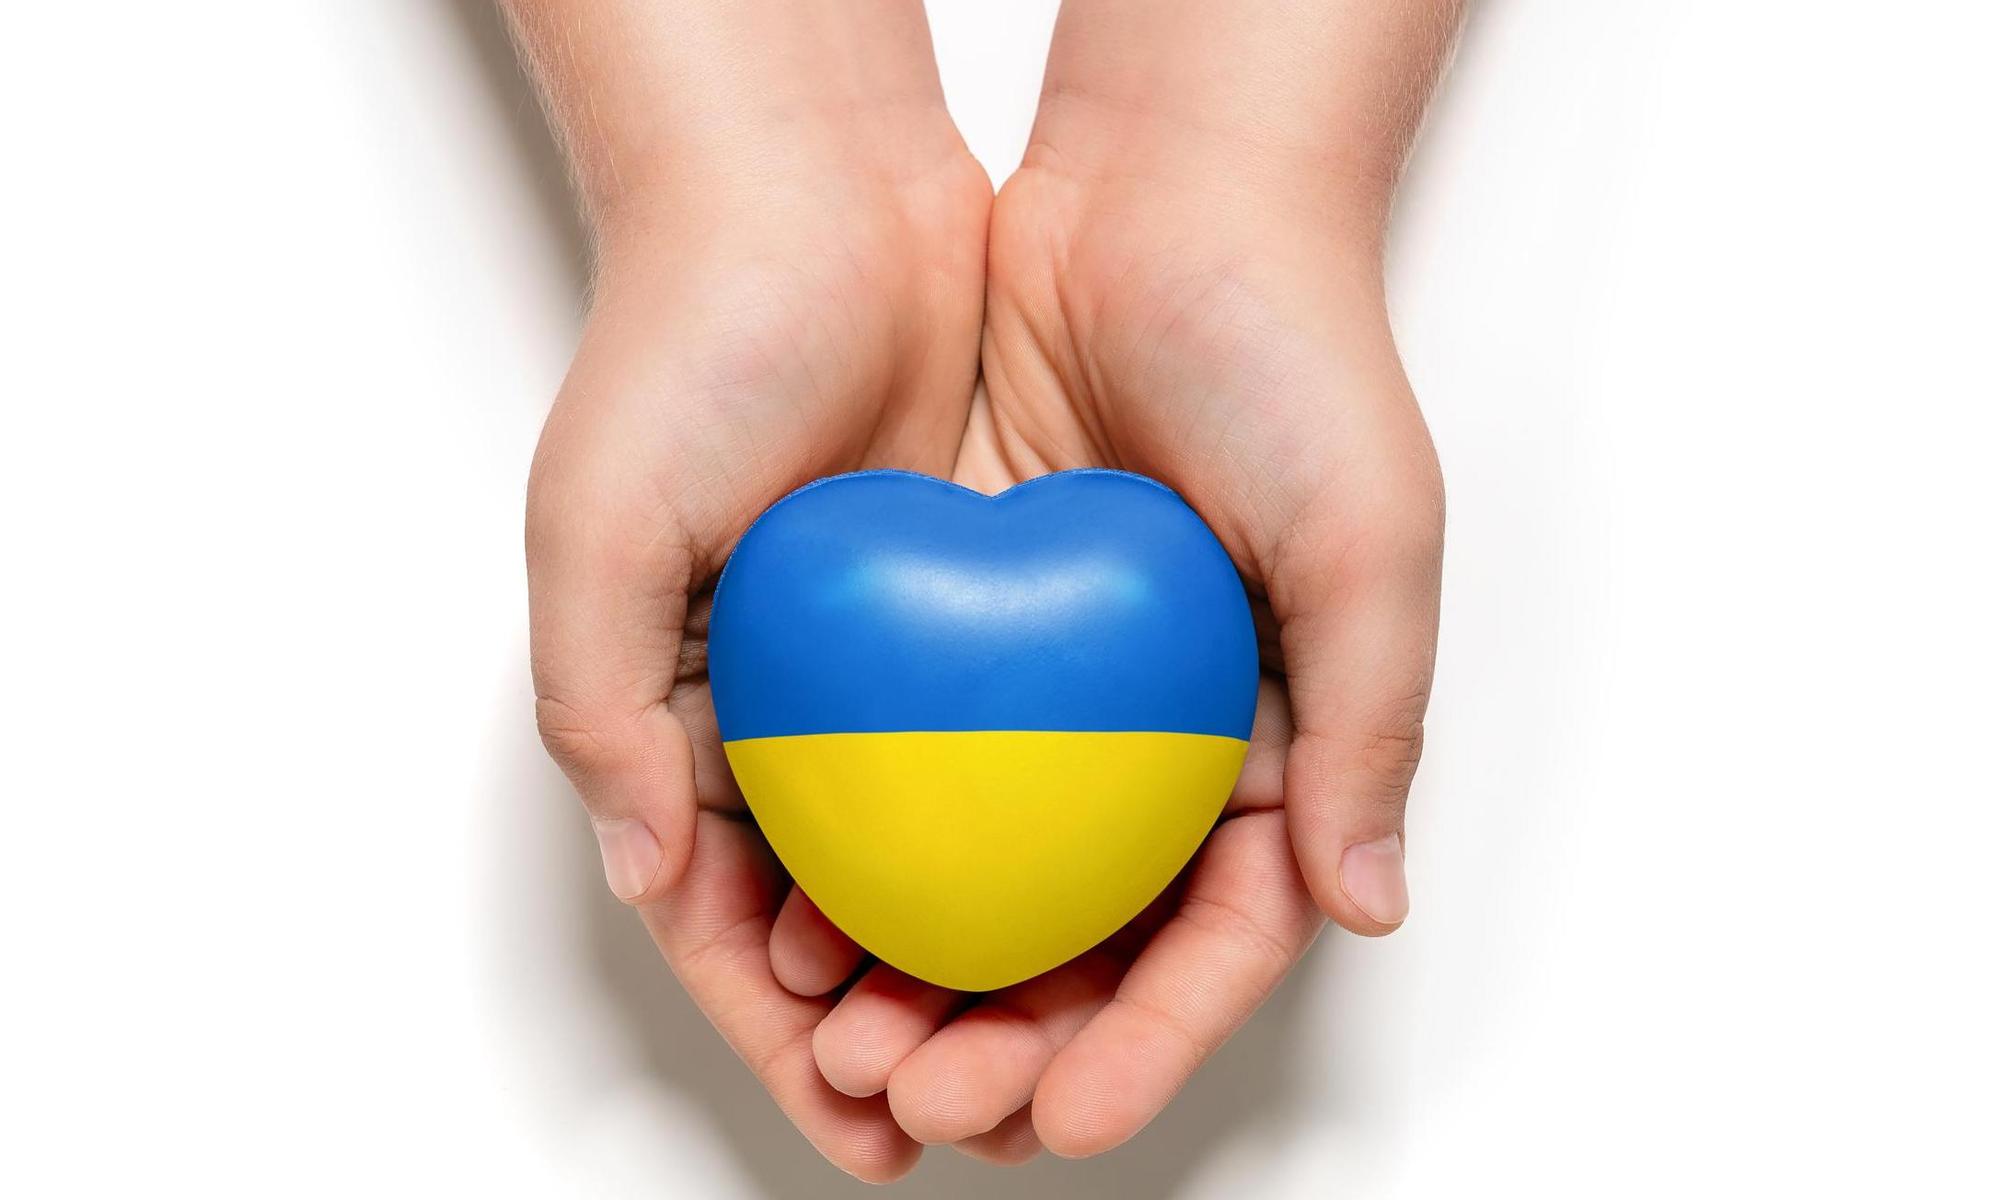 händer som håller i ett hjärta med Ukrainas flaggas färger